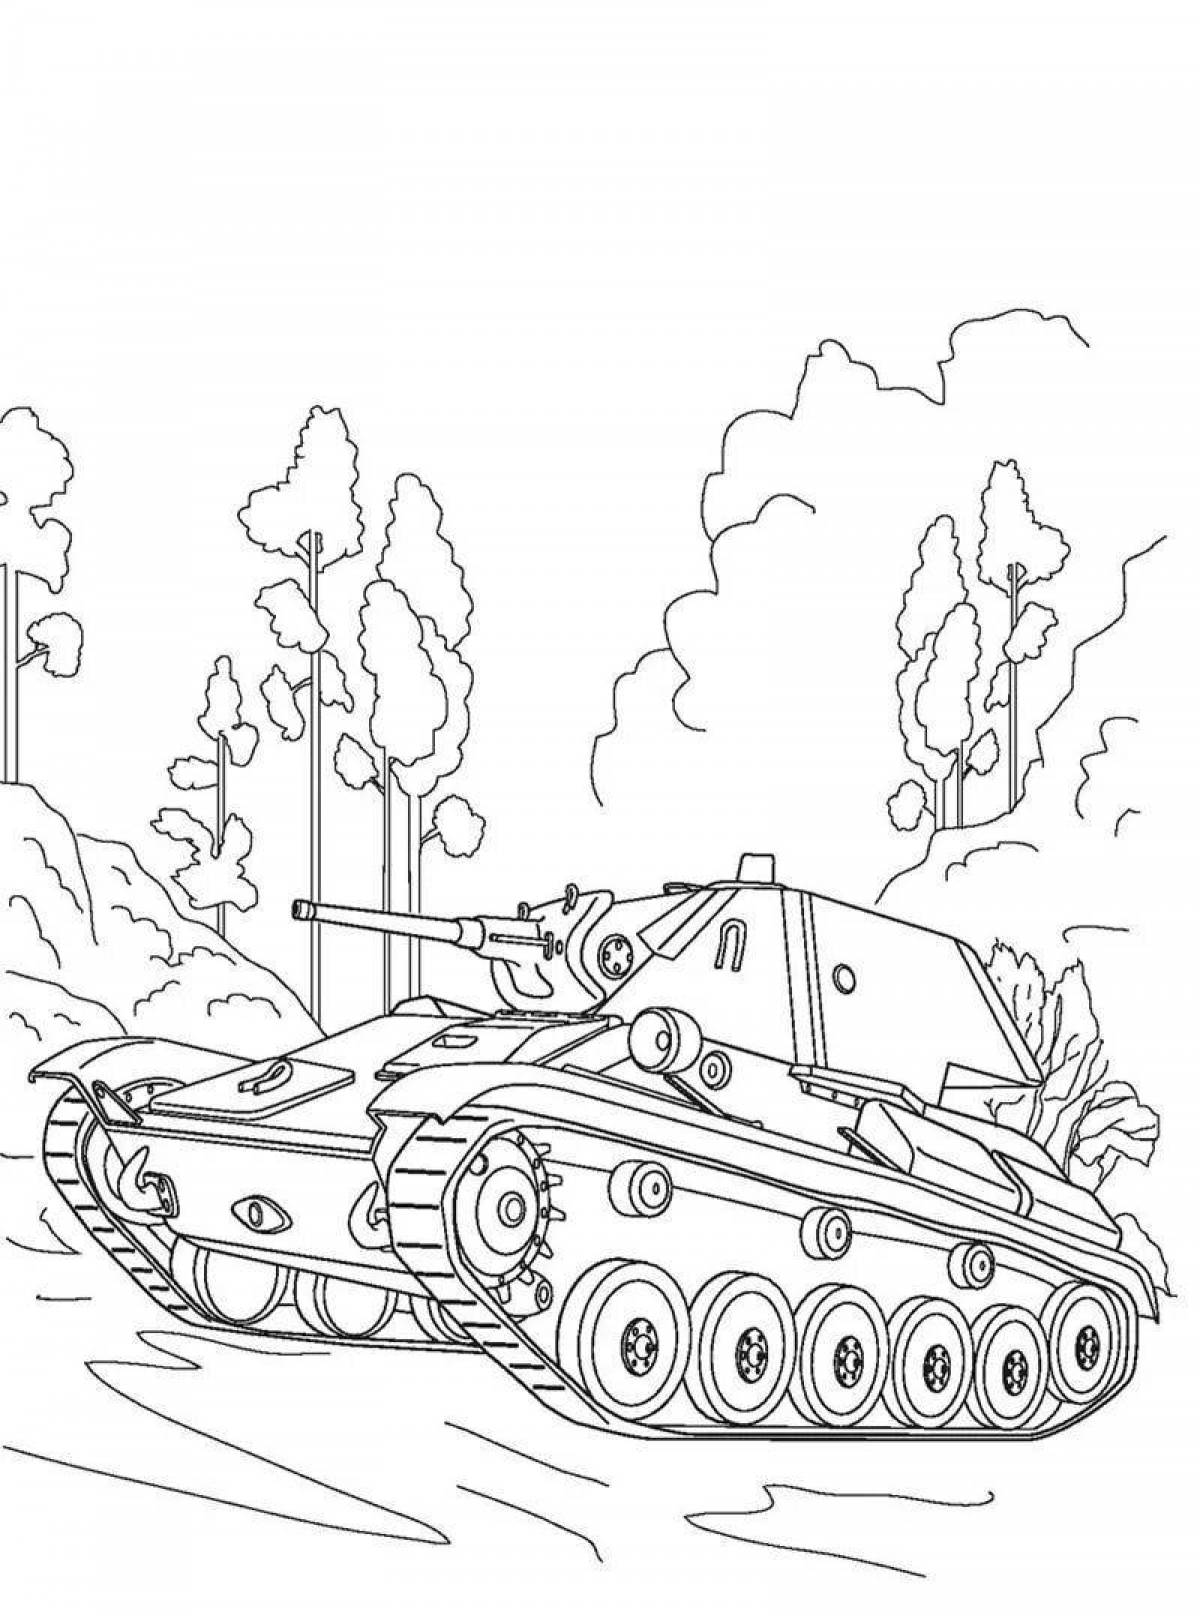 Увлекательная раскраска world of tanks